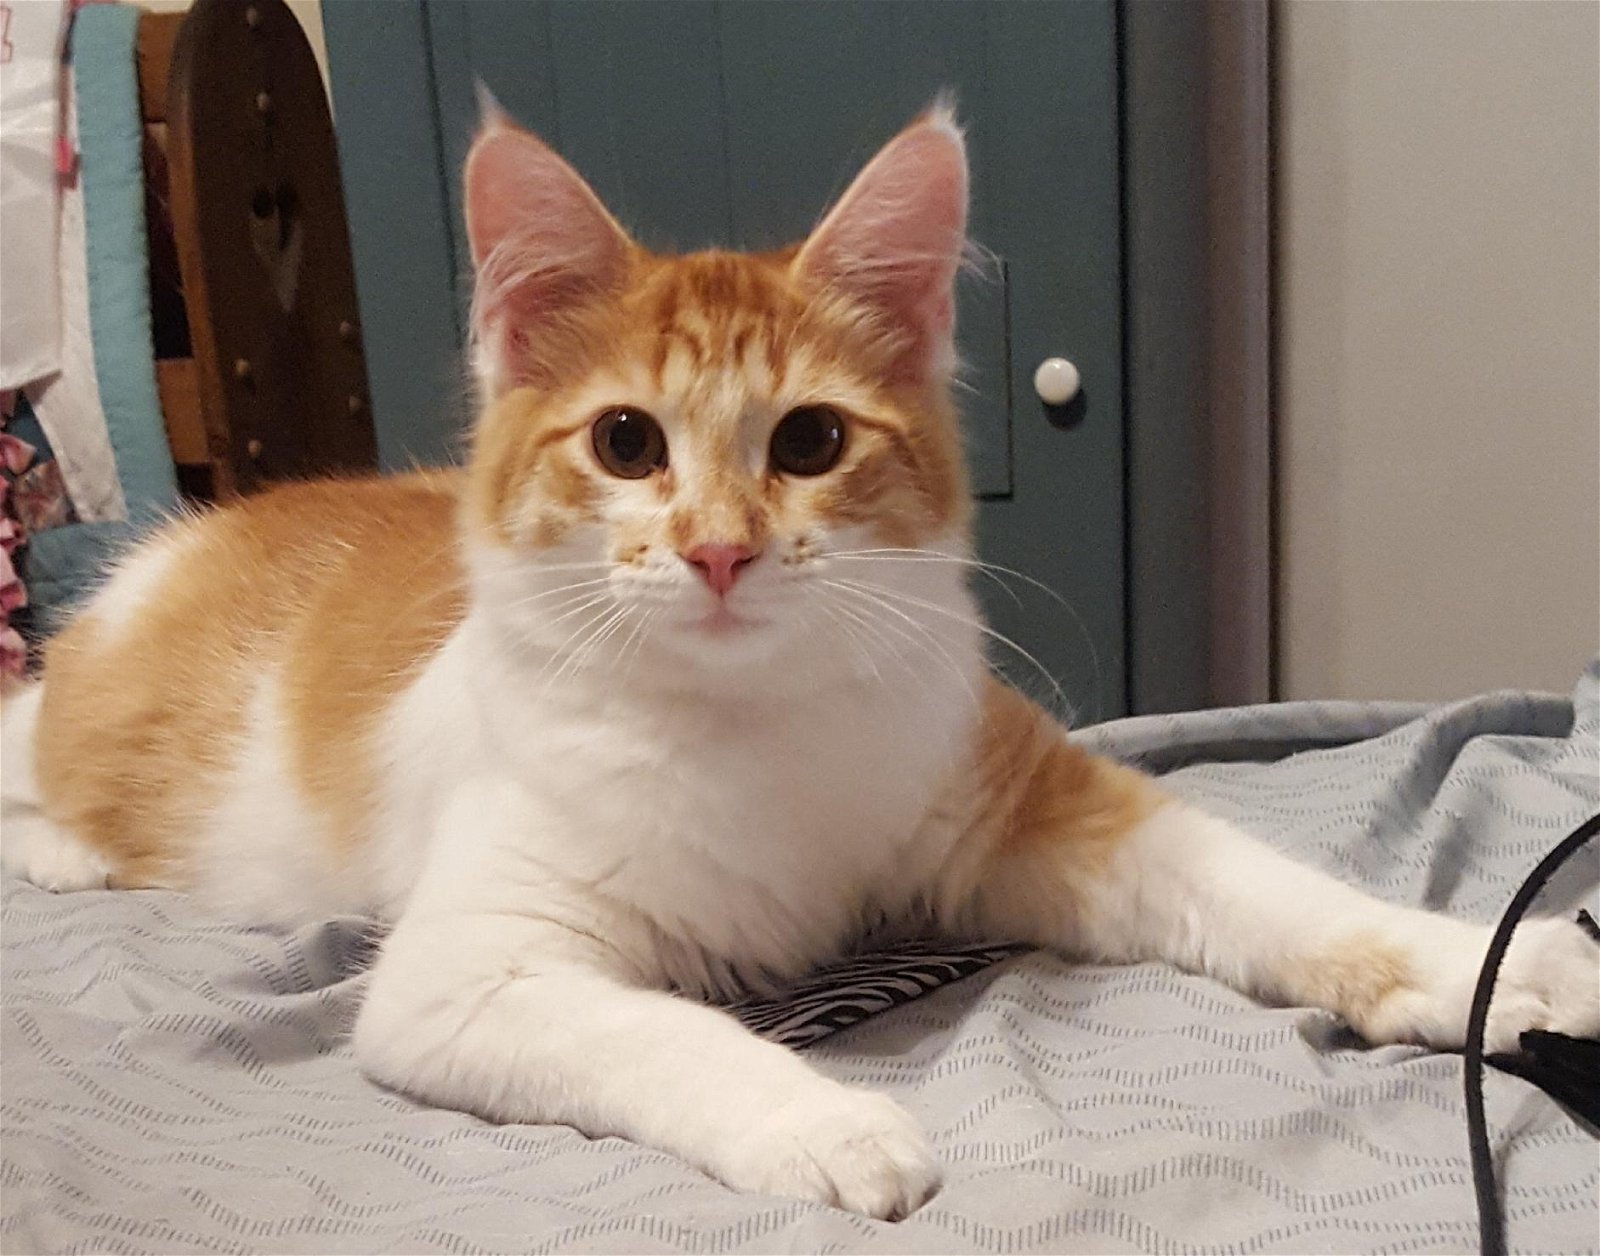 adoptable Cat in Colonia, NJ named Julius